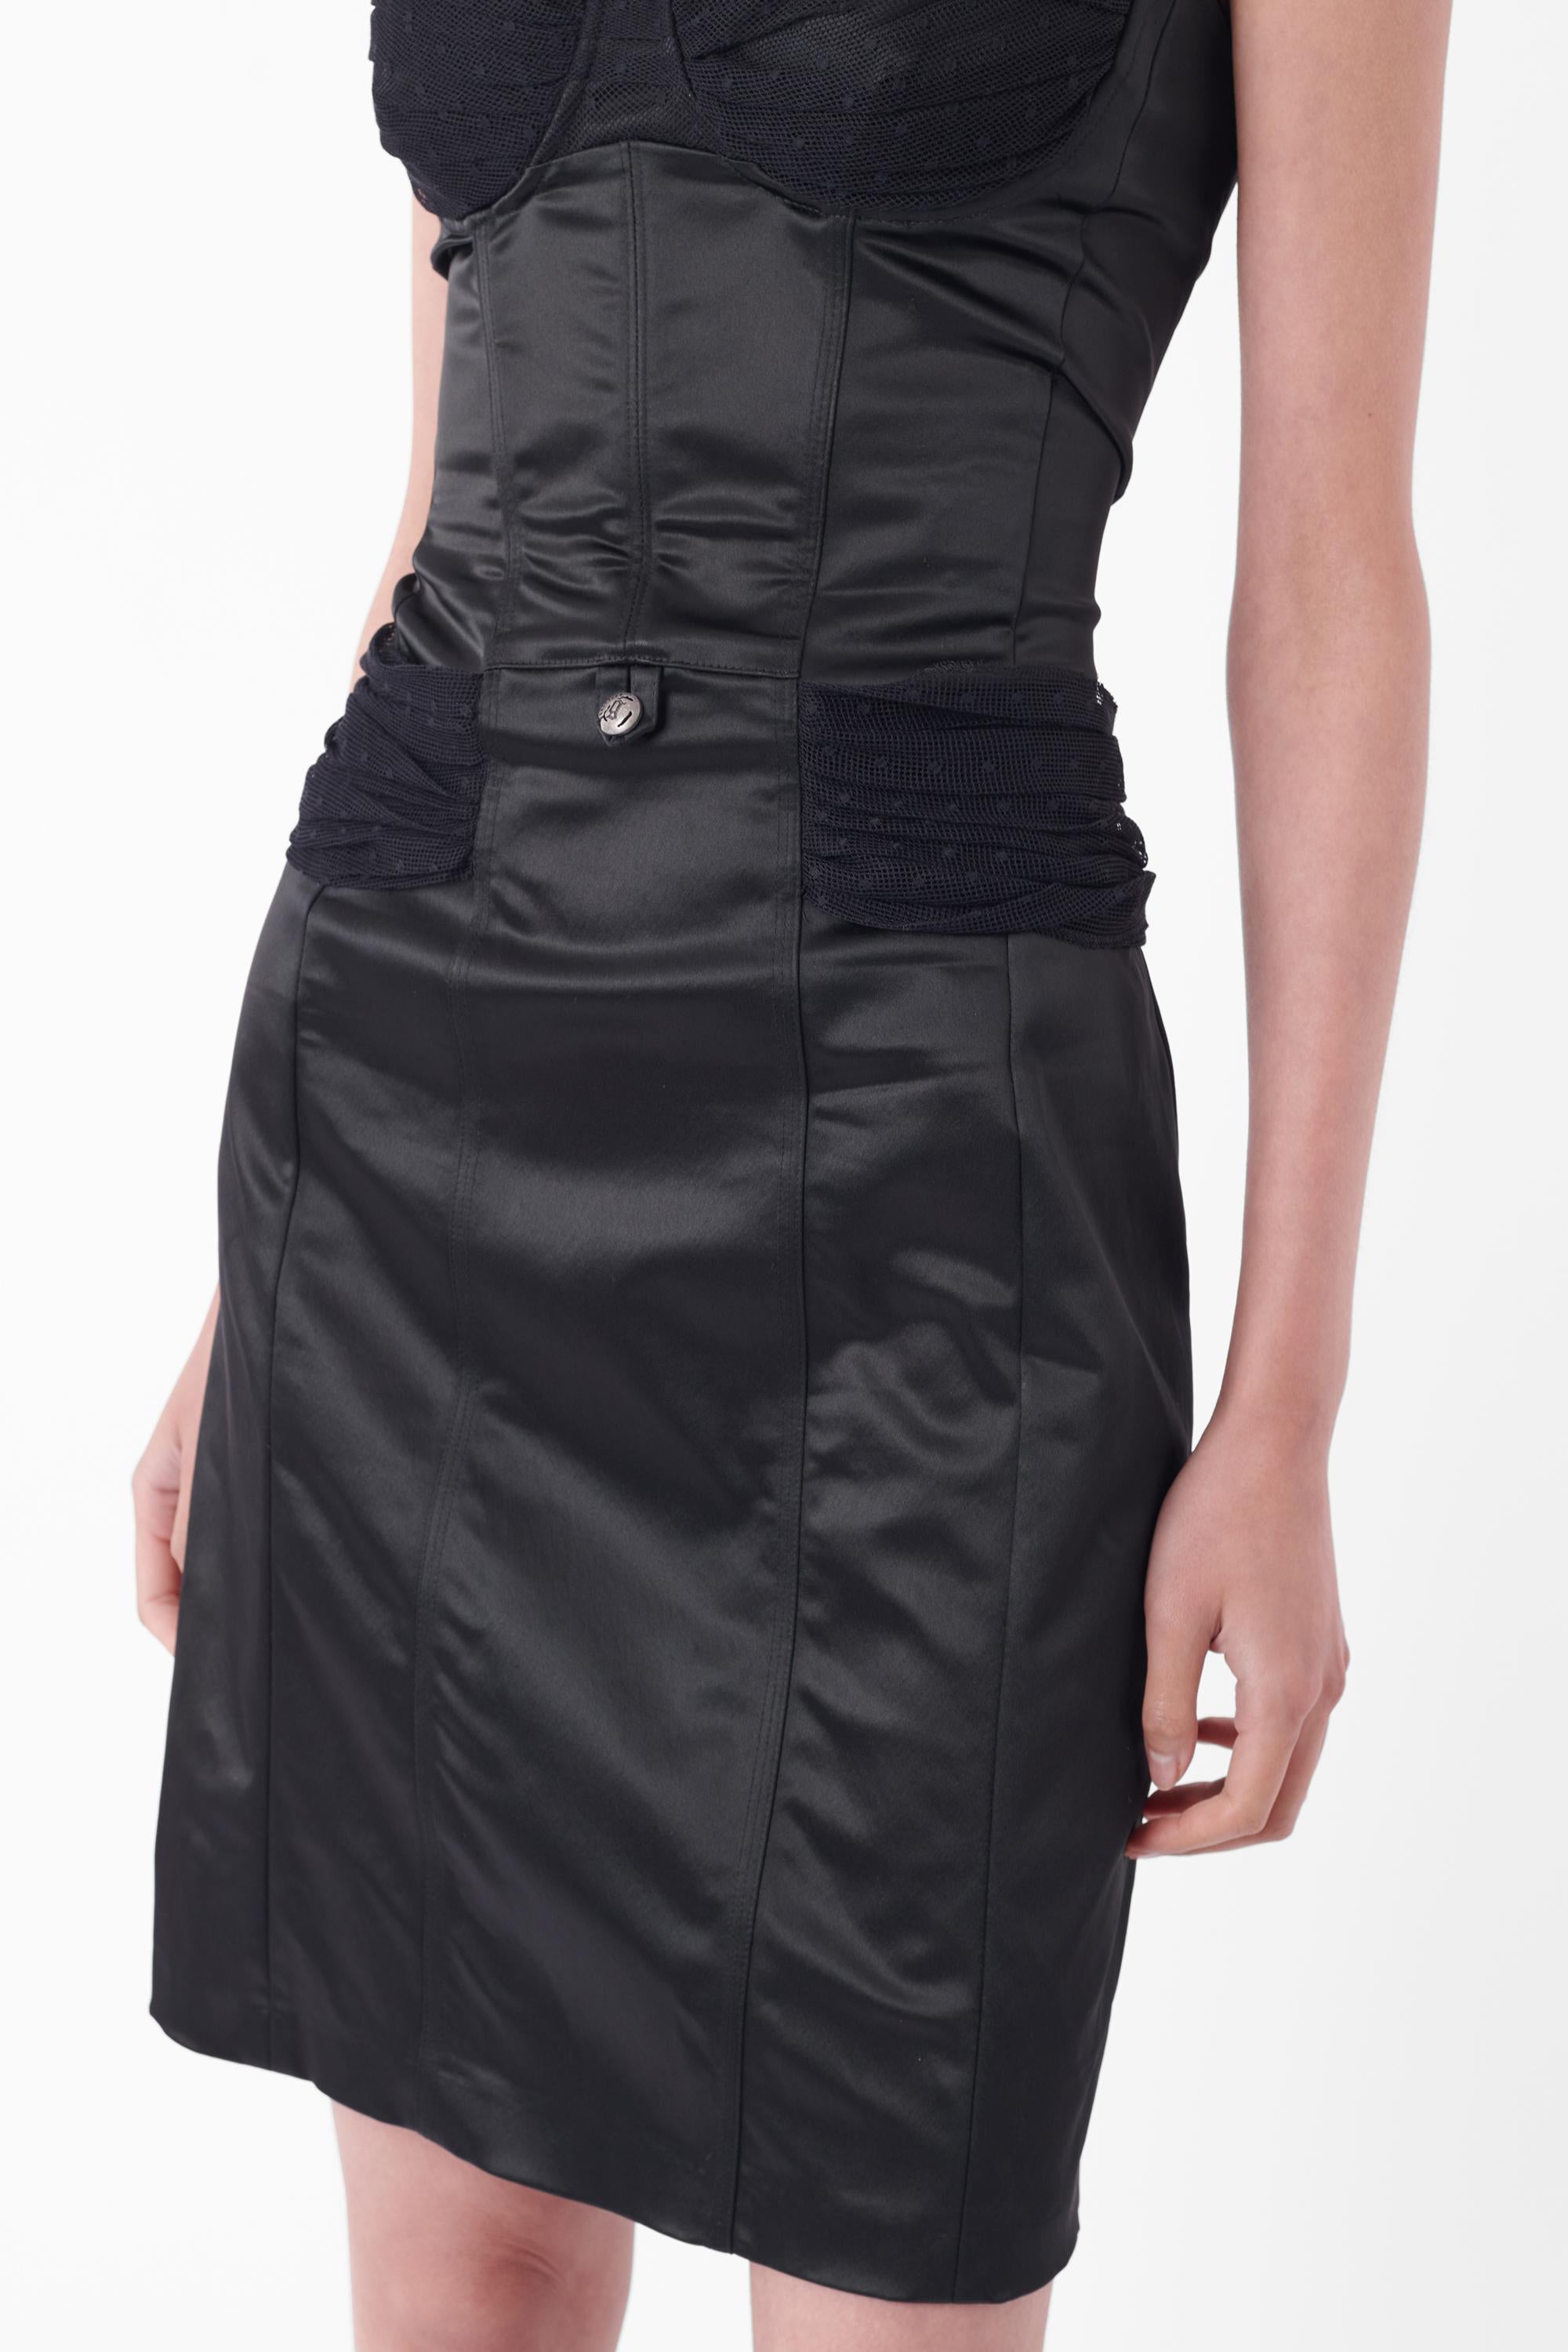 Women's John Galliano Vintage Early 2000’s Black Bustier Dress For Sale